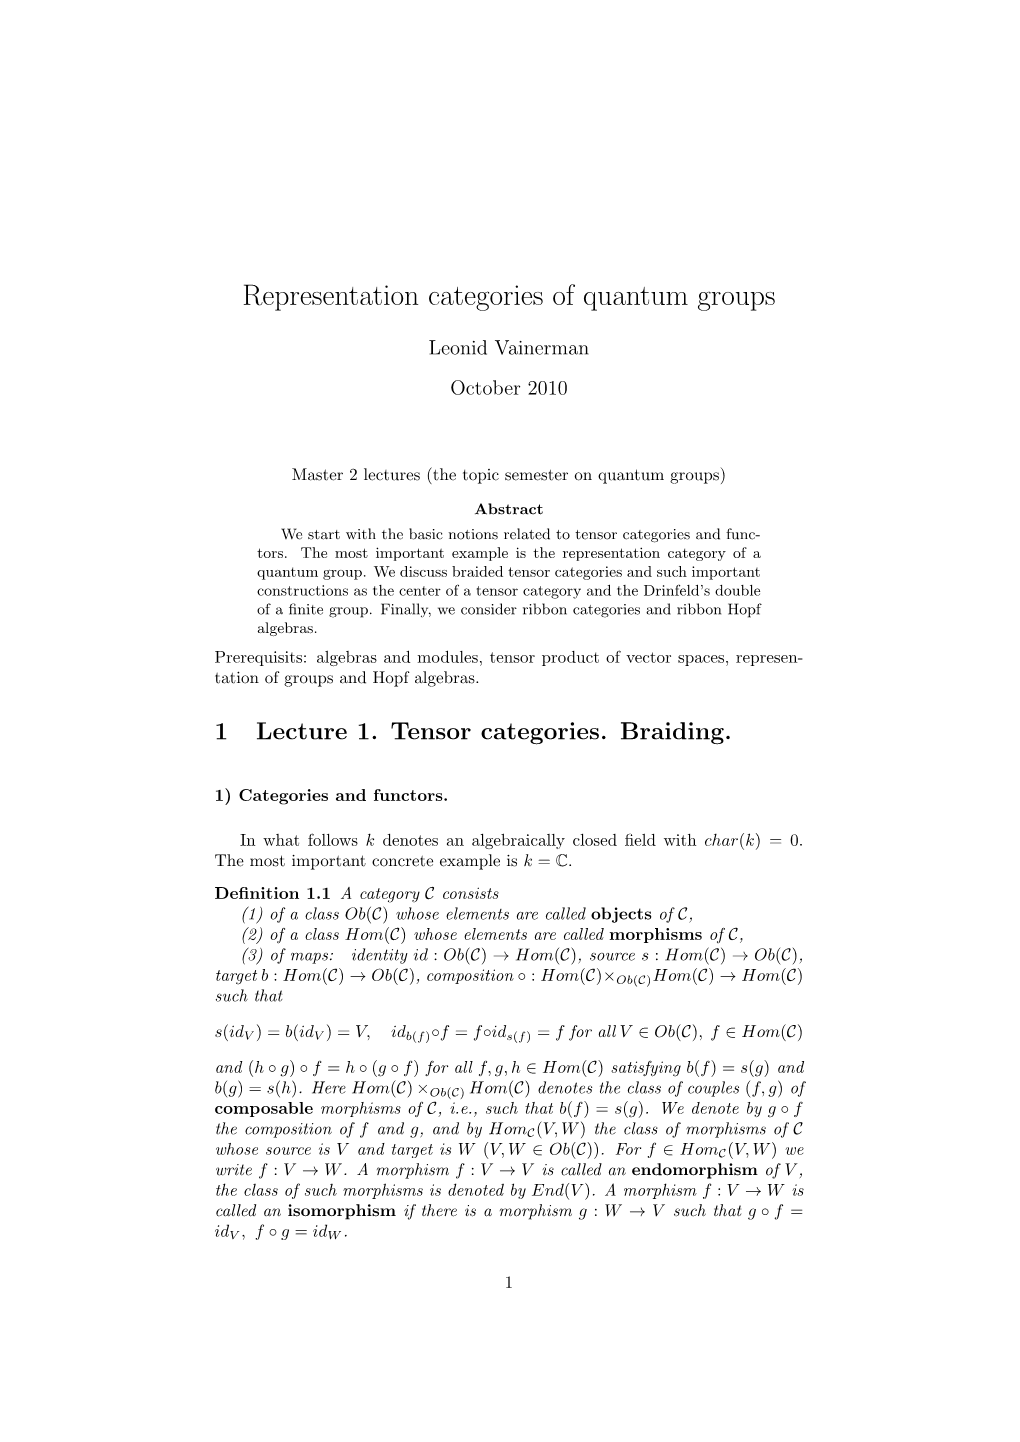 Representation Categories of Quantum Groups